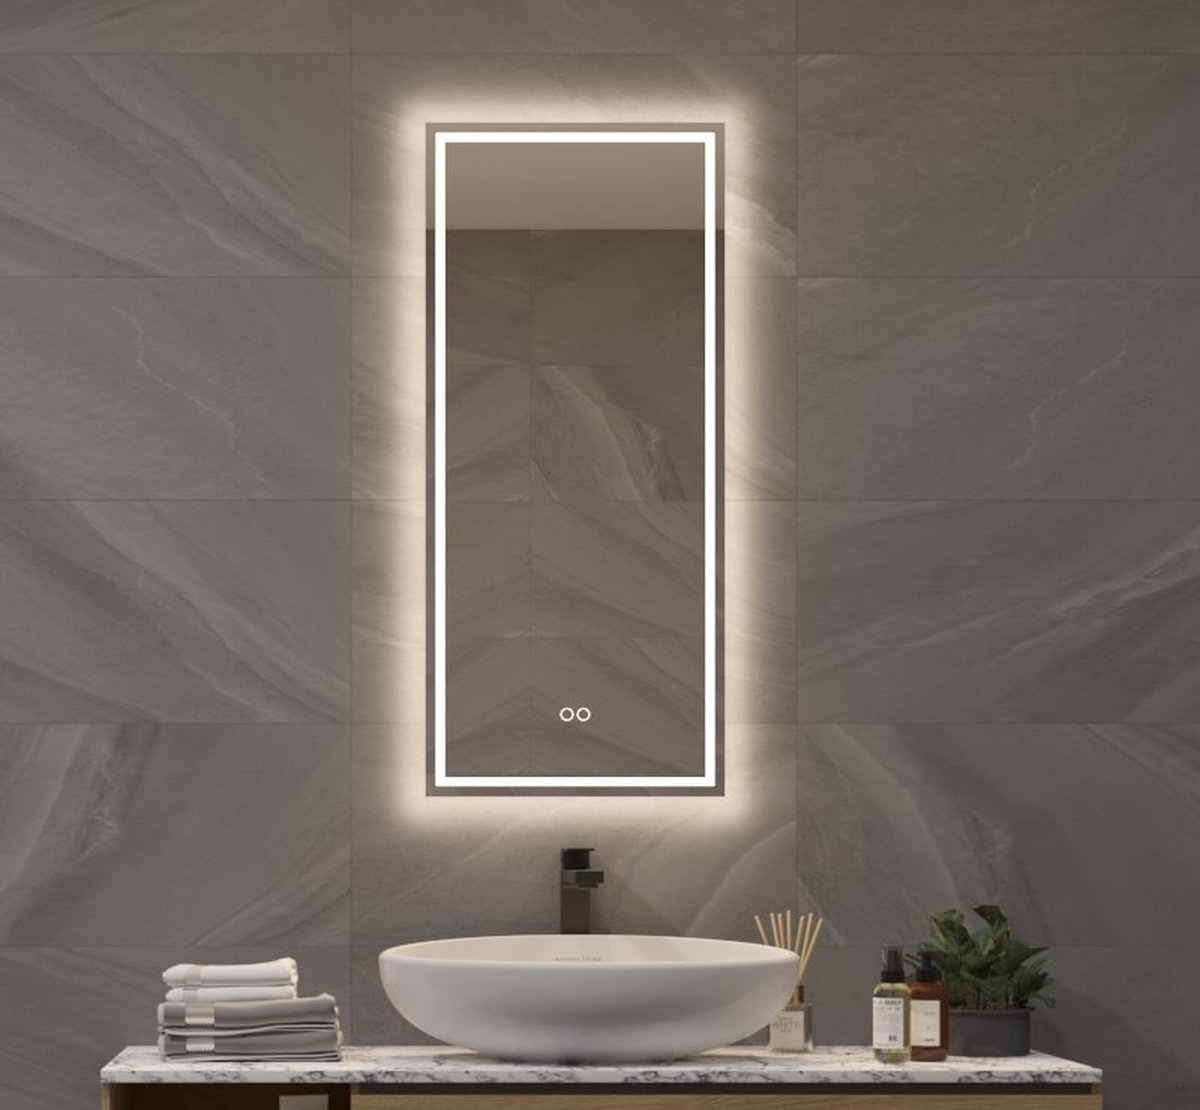 Badkamerspiegel met directe en indirecte verlichting, verwarming, instelbare lichtkleur en dimfunctie 40×90 cm